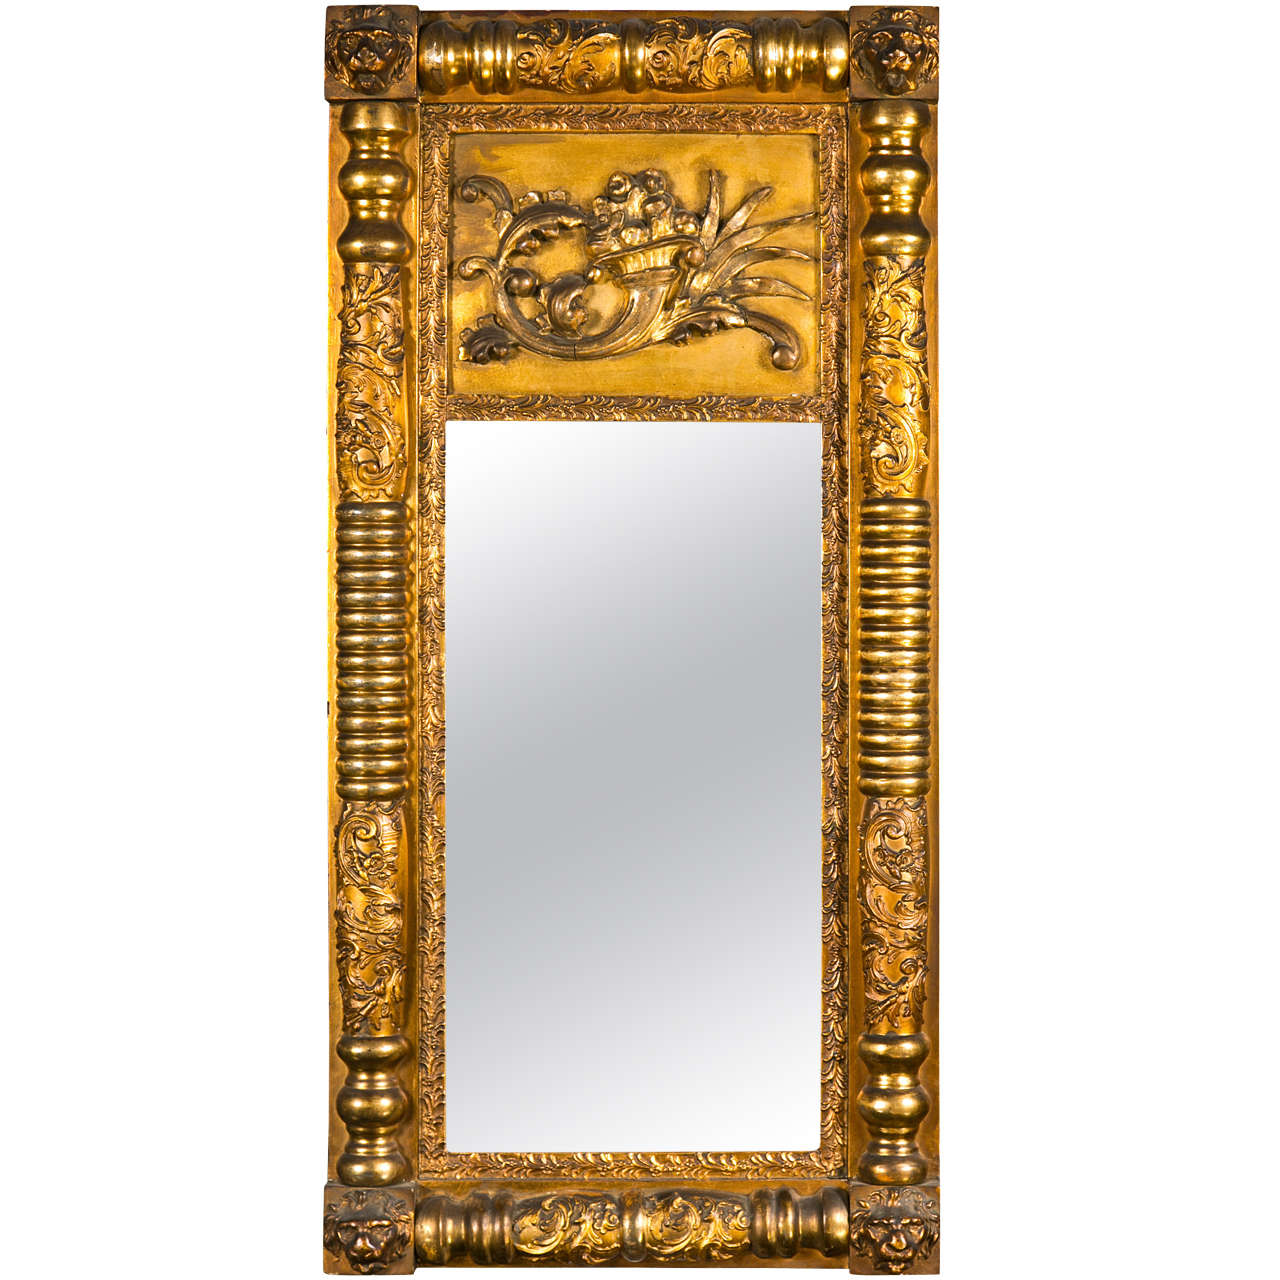 Miroir en bois doré de style Empire français avec cadre sculpté de manière élaborée, vers le 19ème siècle